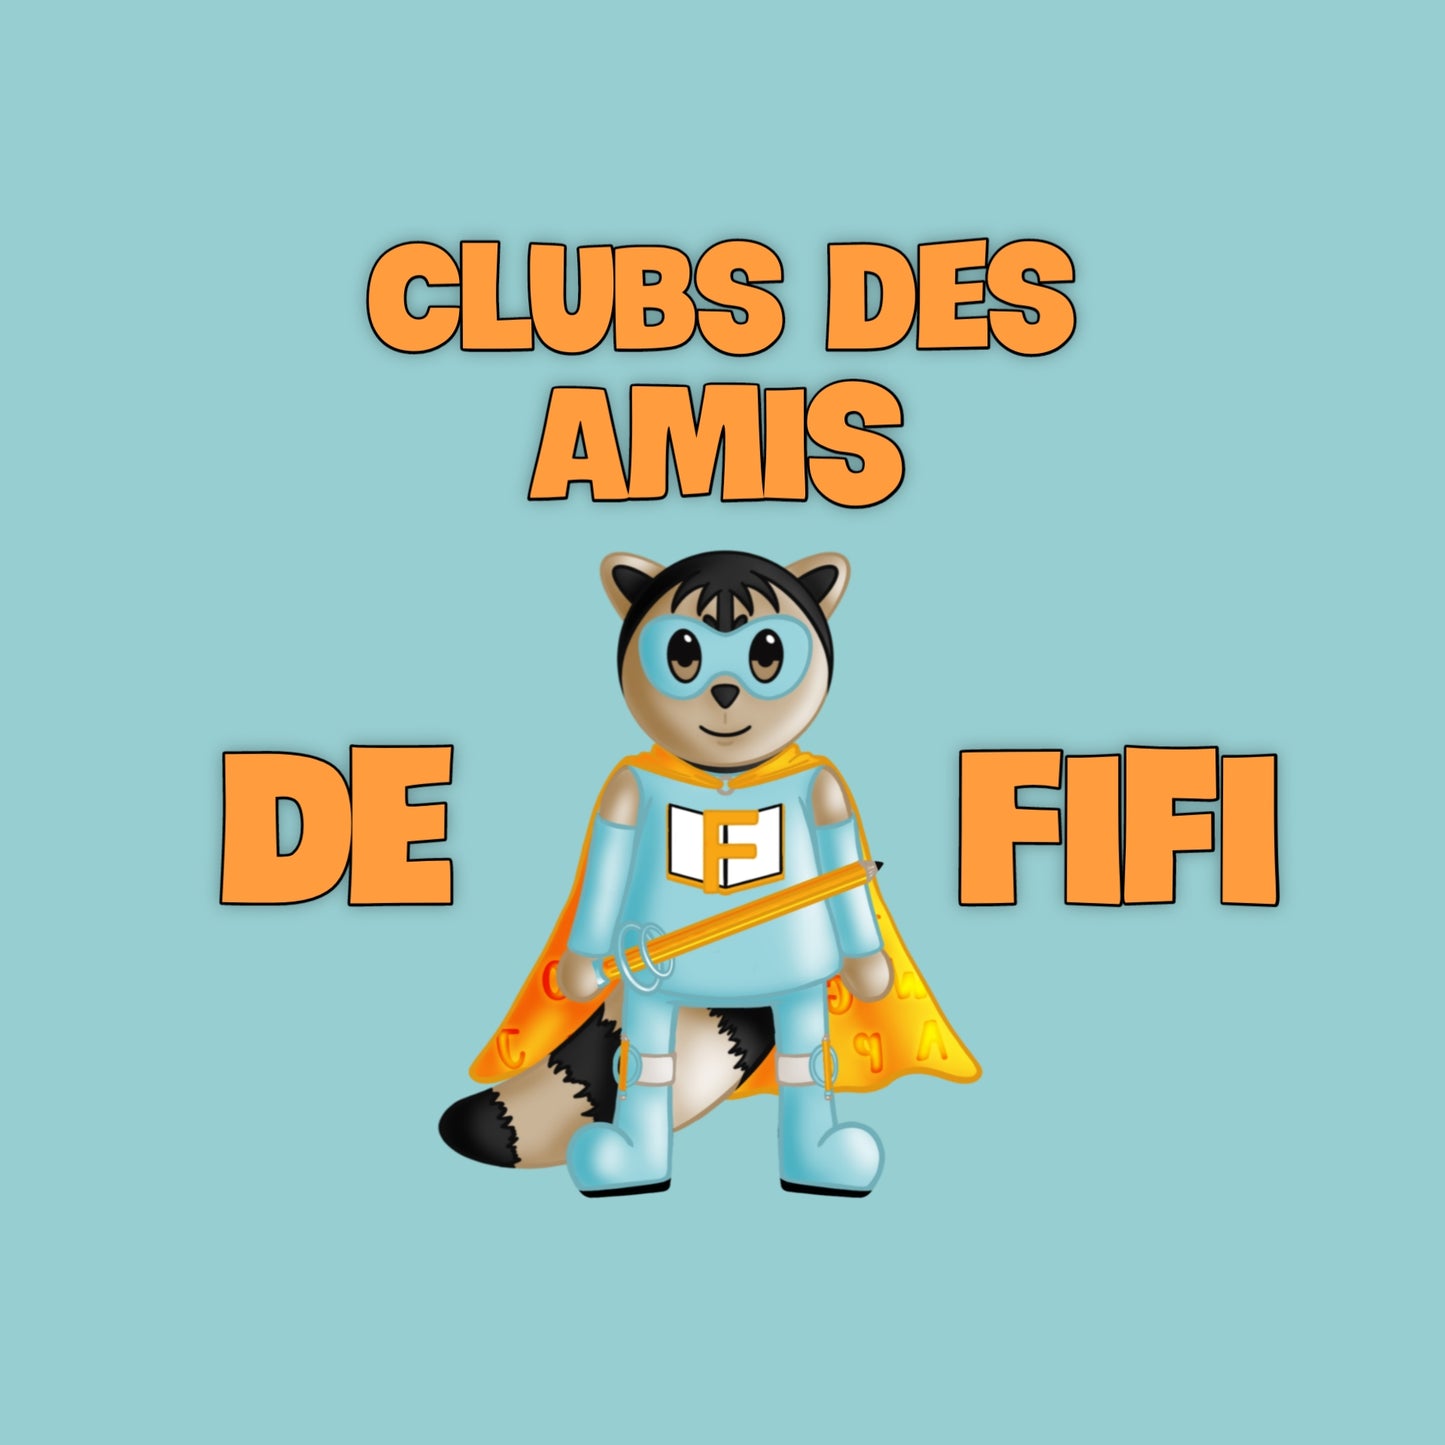 Club des Amis de Fifi